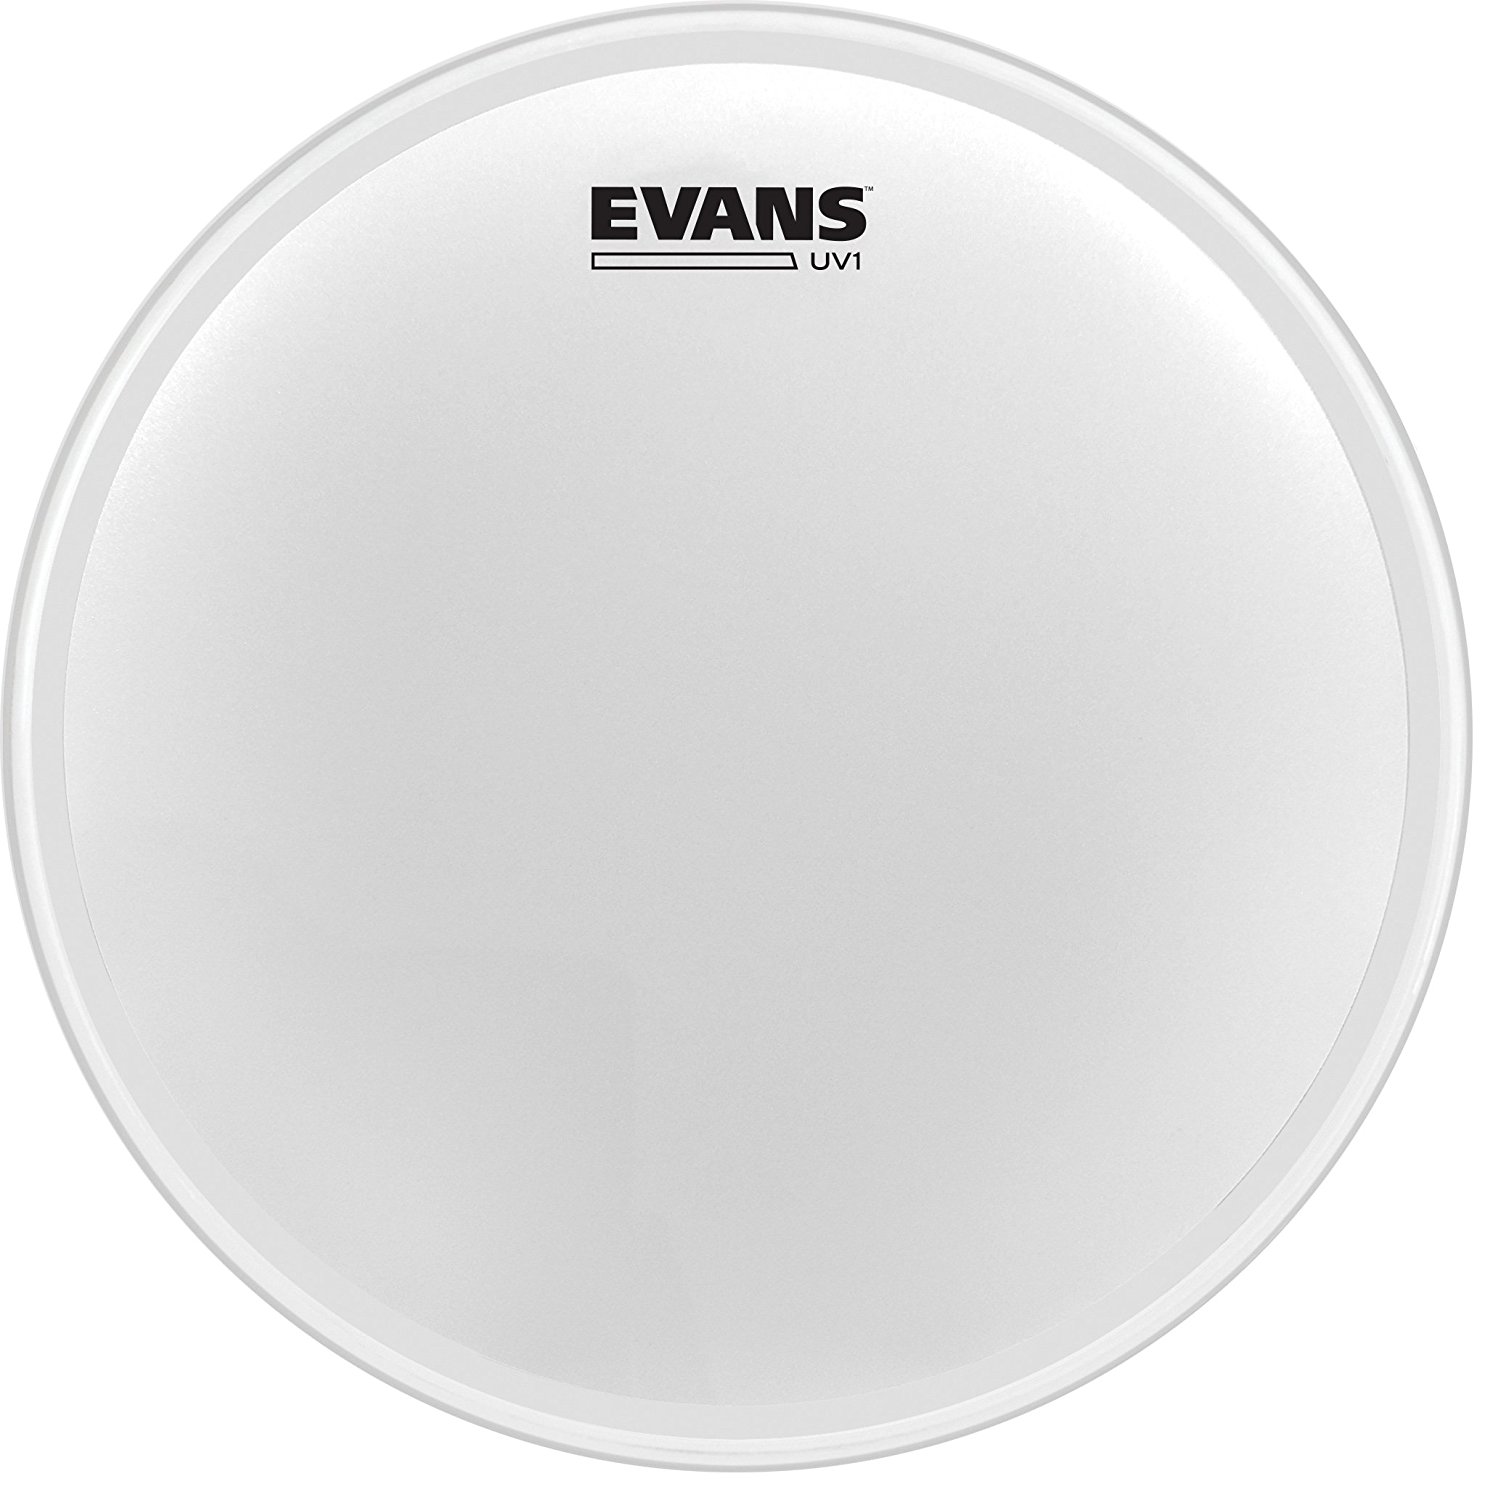 An image of Evans UV1 Coated Snare/Tom Batter 12" | PMT Online